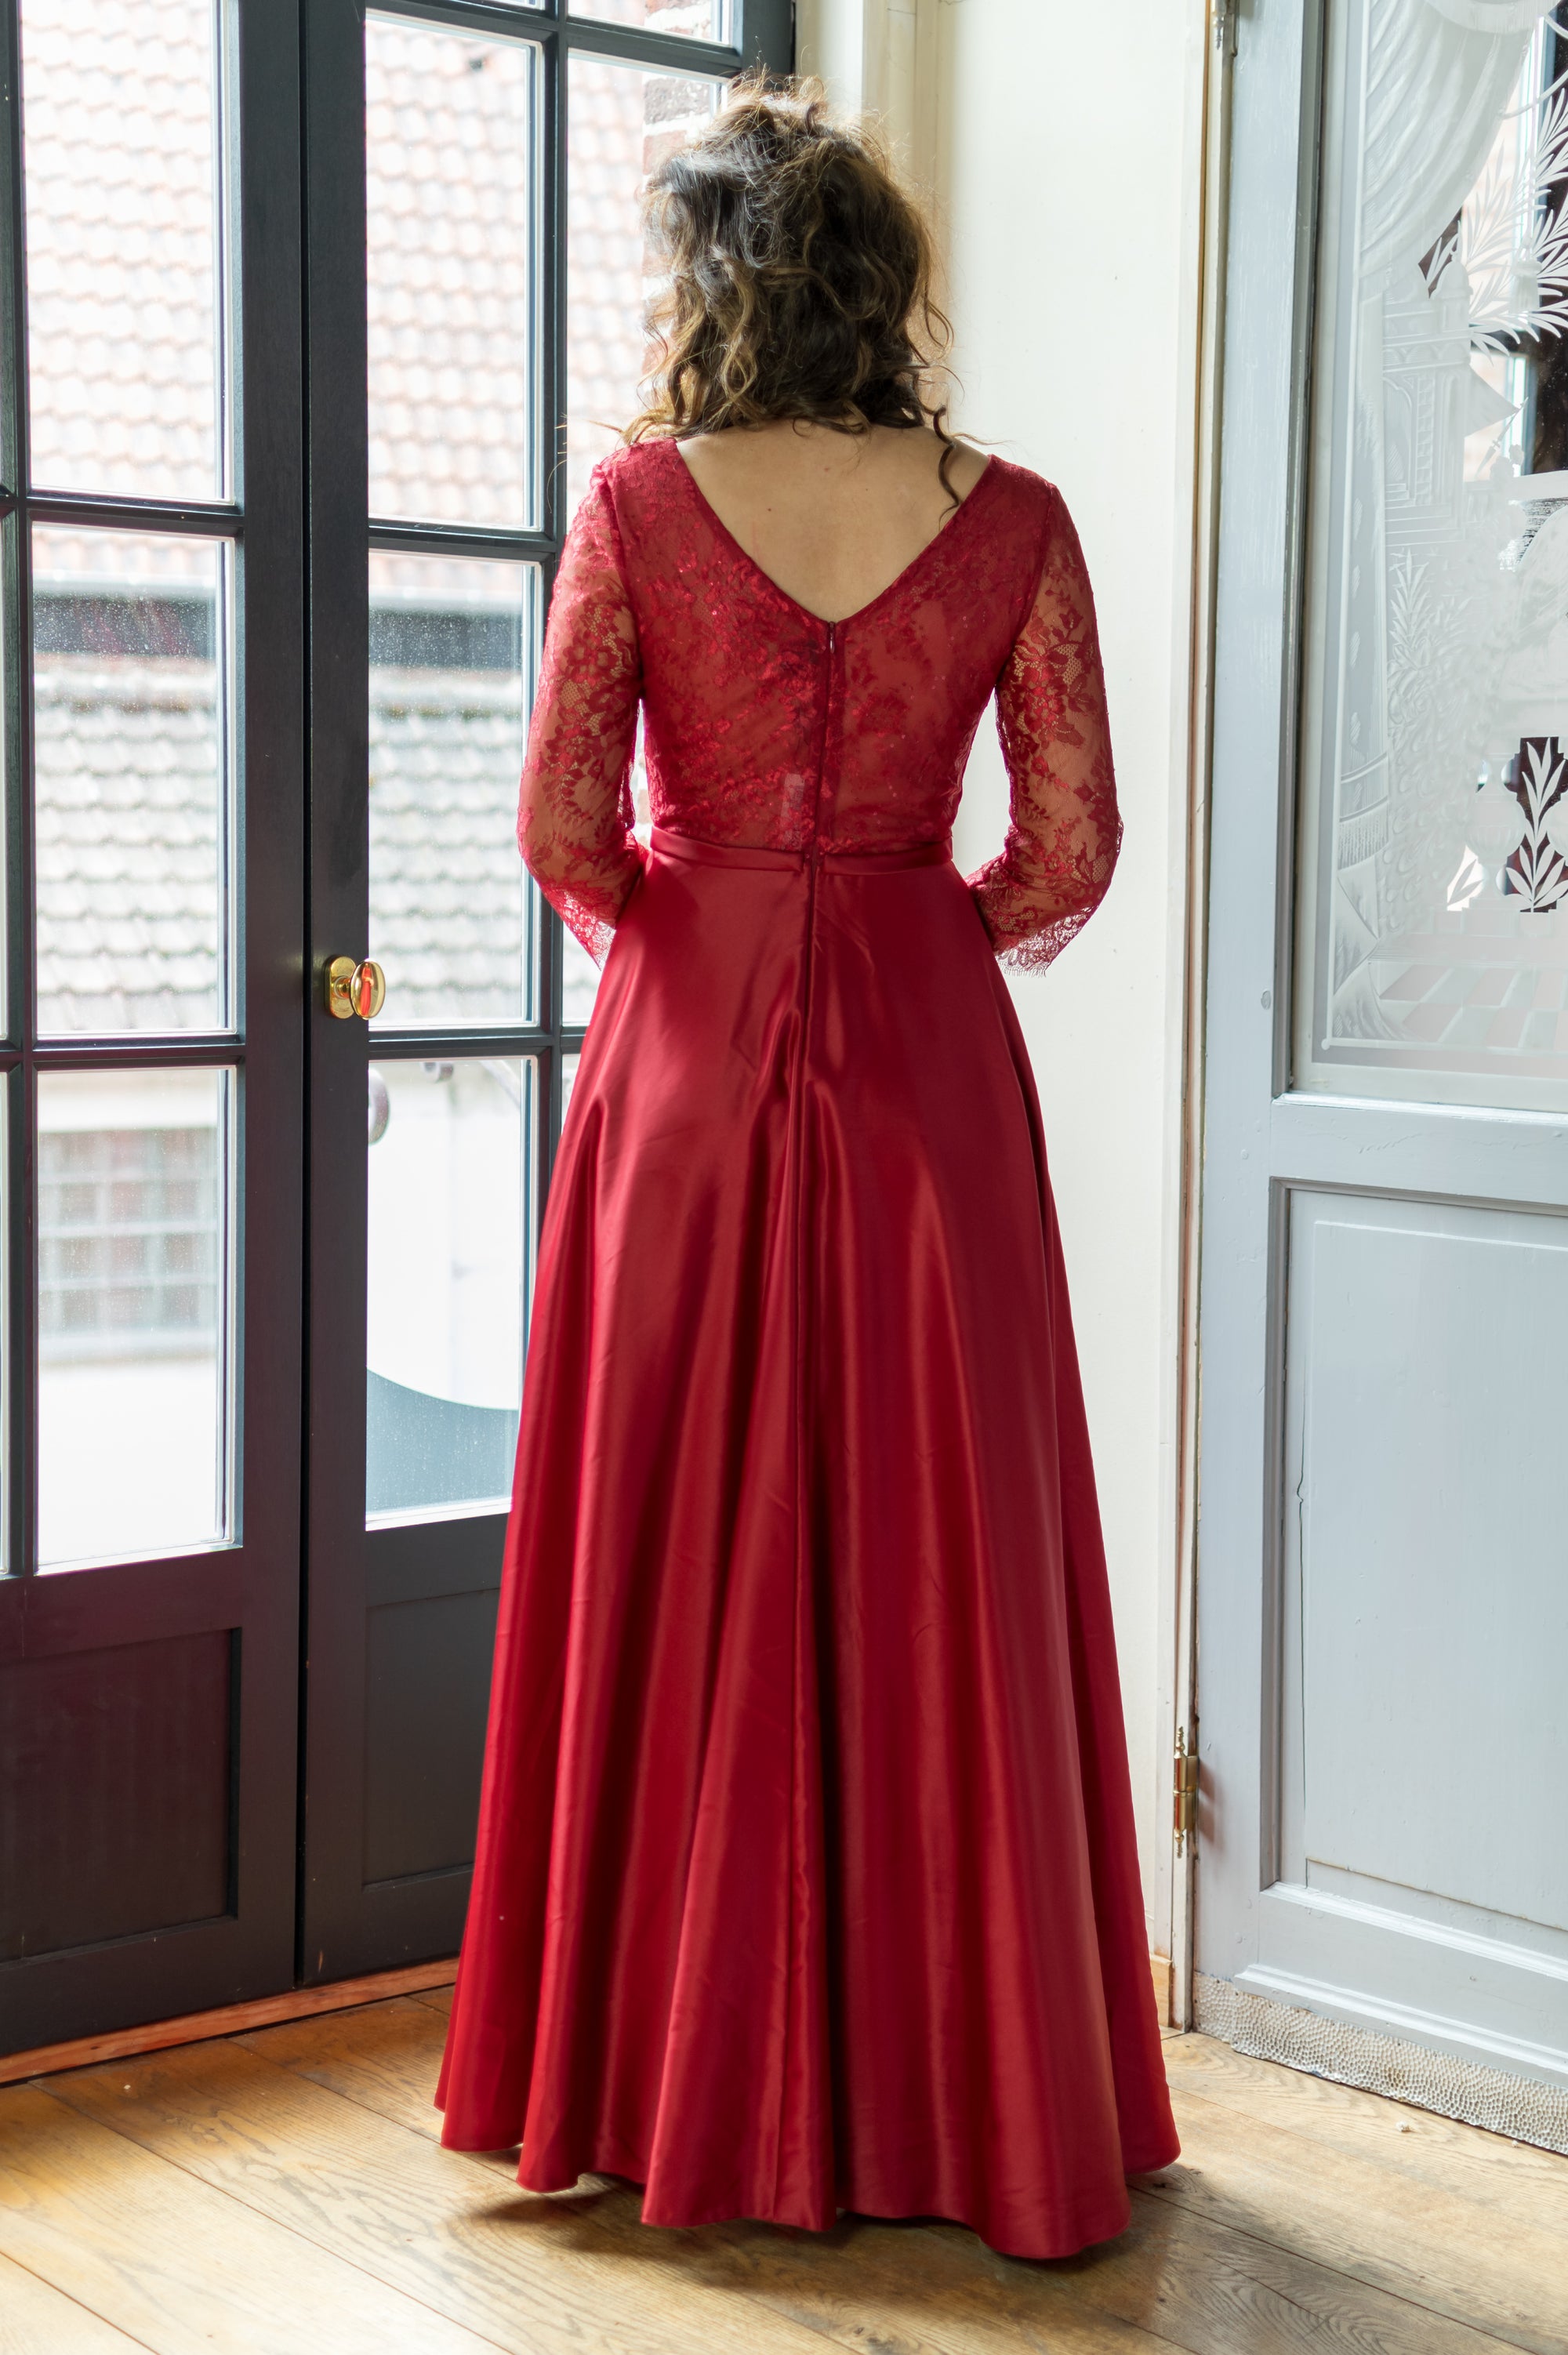 Belle Of The Ball Dress - Cerise (alleen online te koop, niet in de winkel)